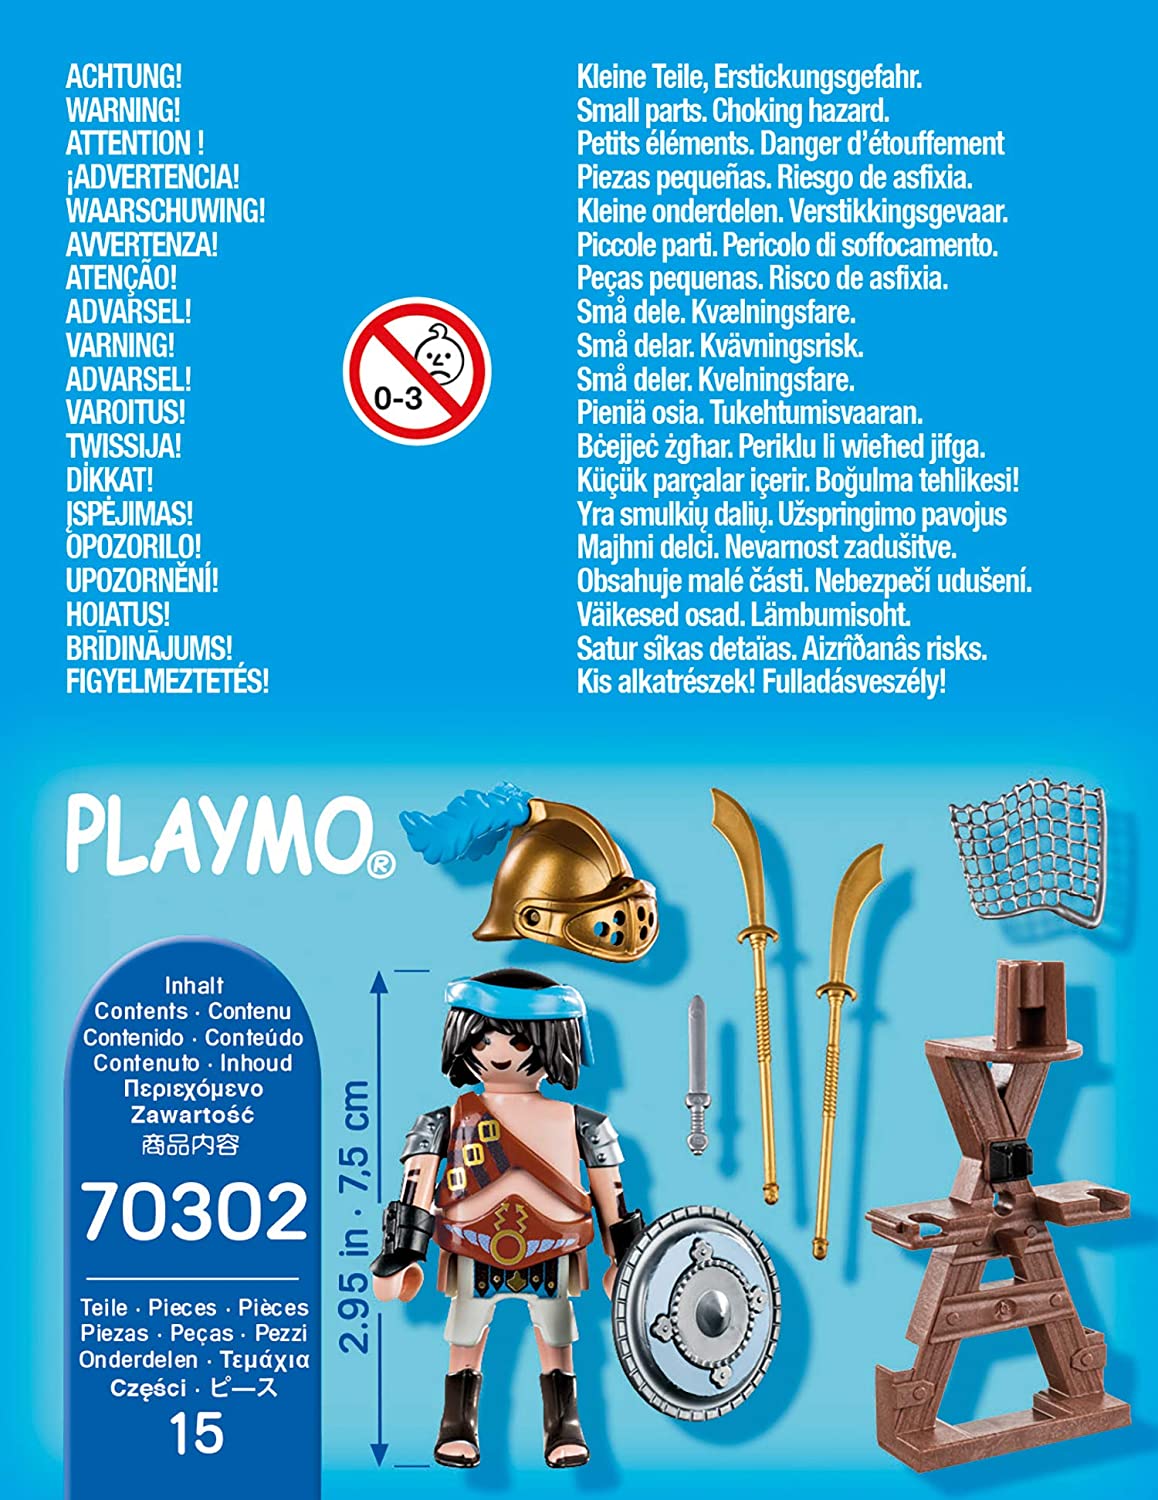 Playmobil 70302 - Gladiator mit Waffenständer - Special Plus